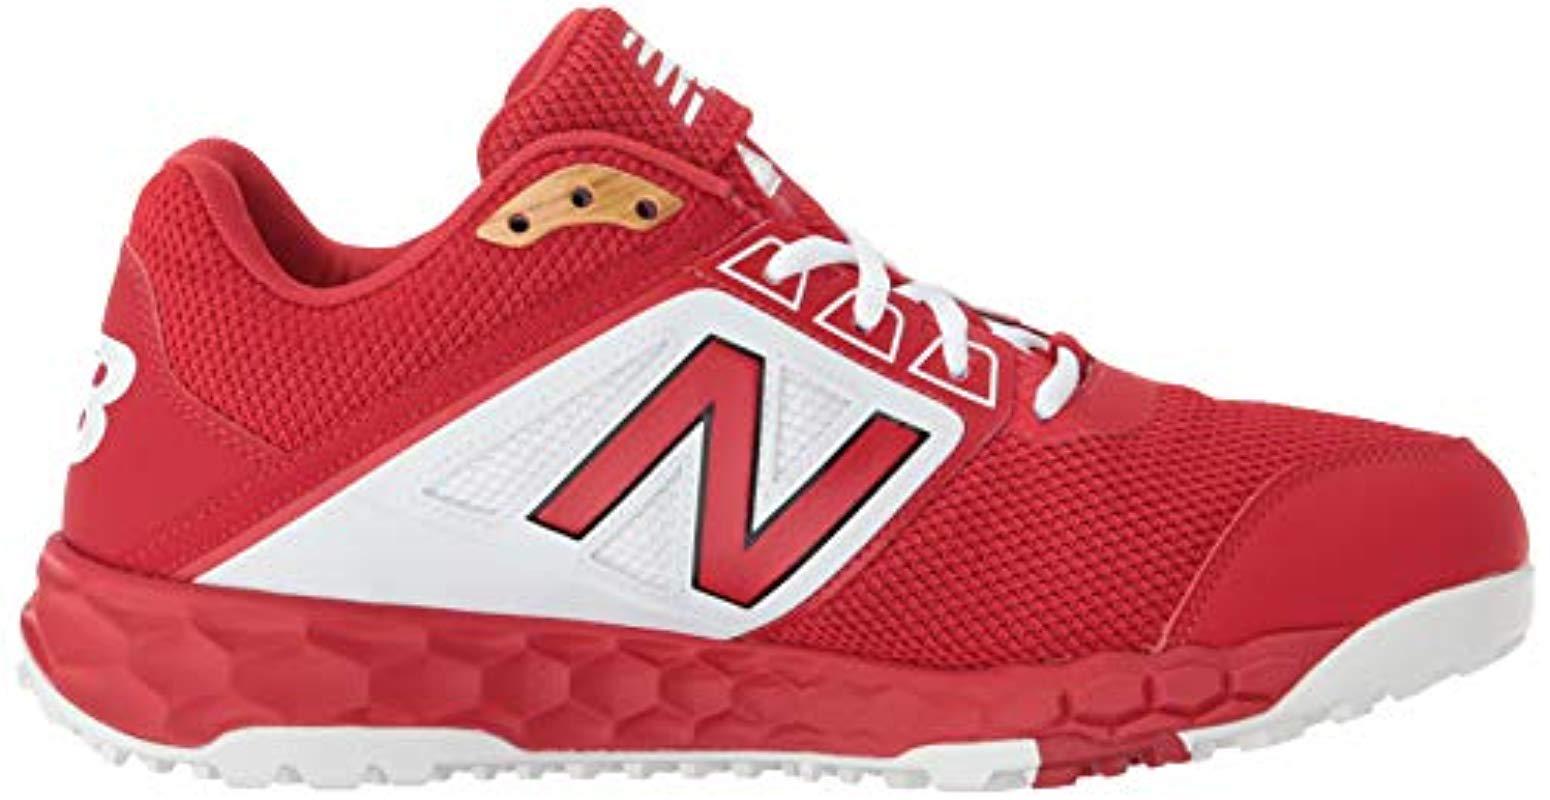 New Balance Rubber 3000v4 Turf Baseball Shoe in Red/White (Red) for Men ...